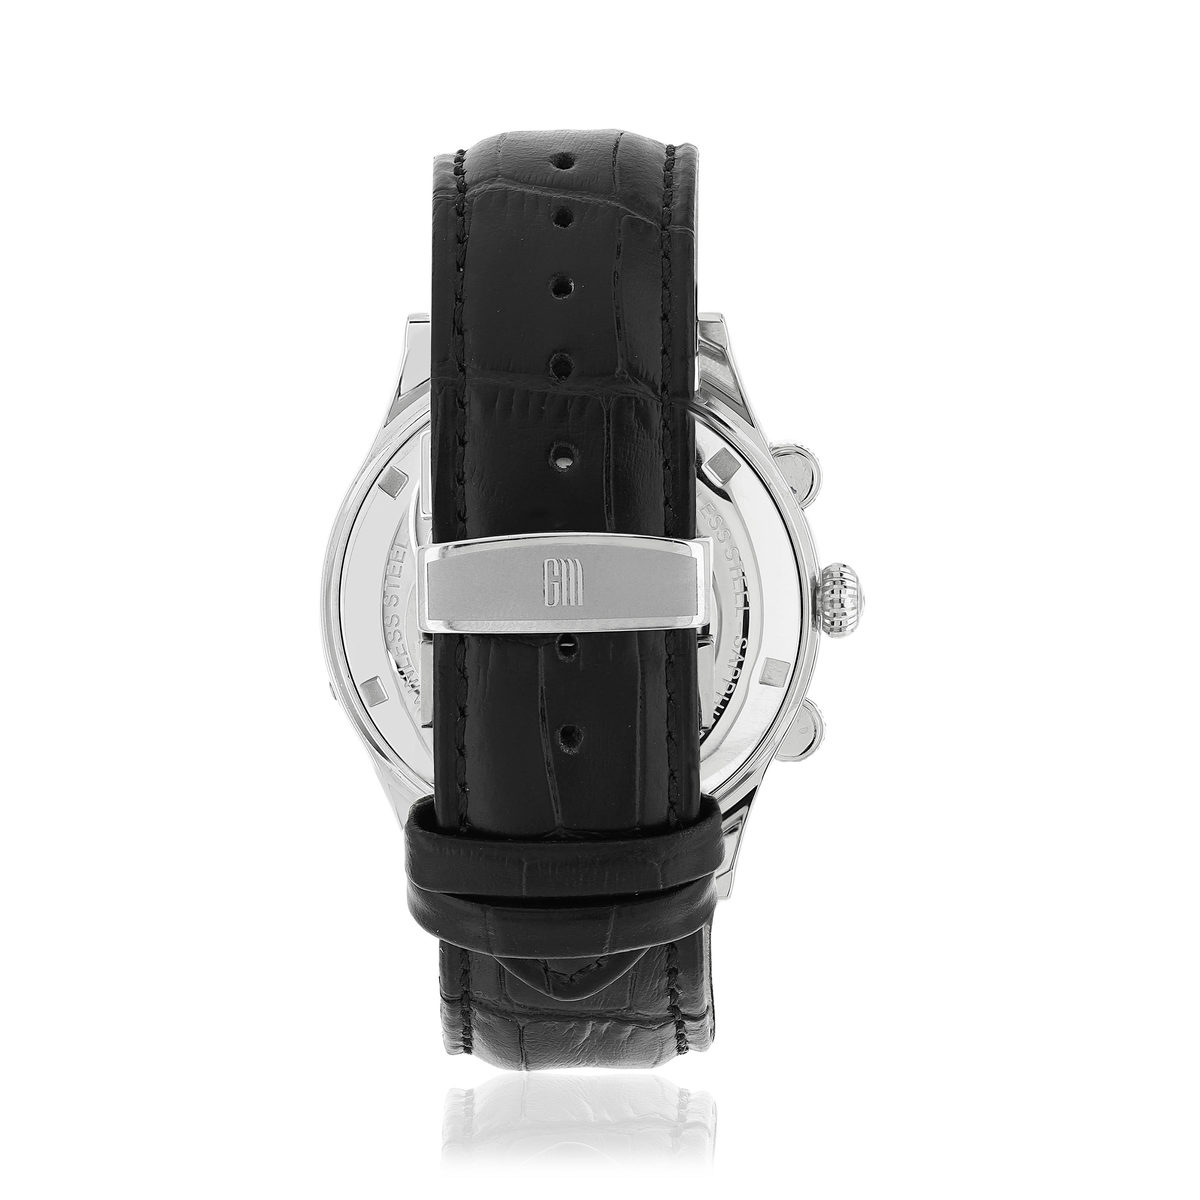 Montre MATY GM automatique chronographe cadran noir bracelet cuir noir - vue 5